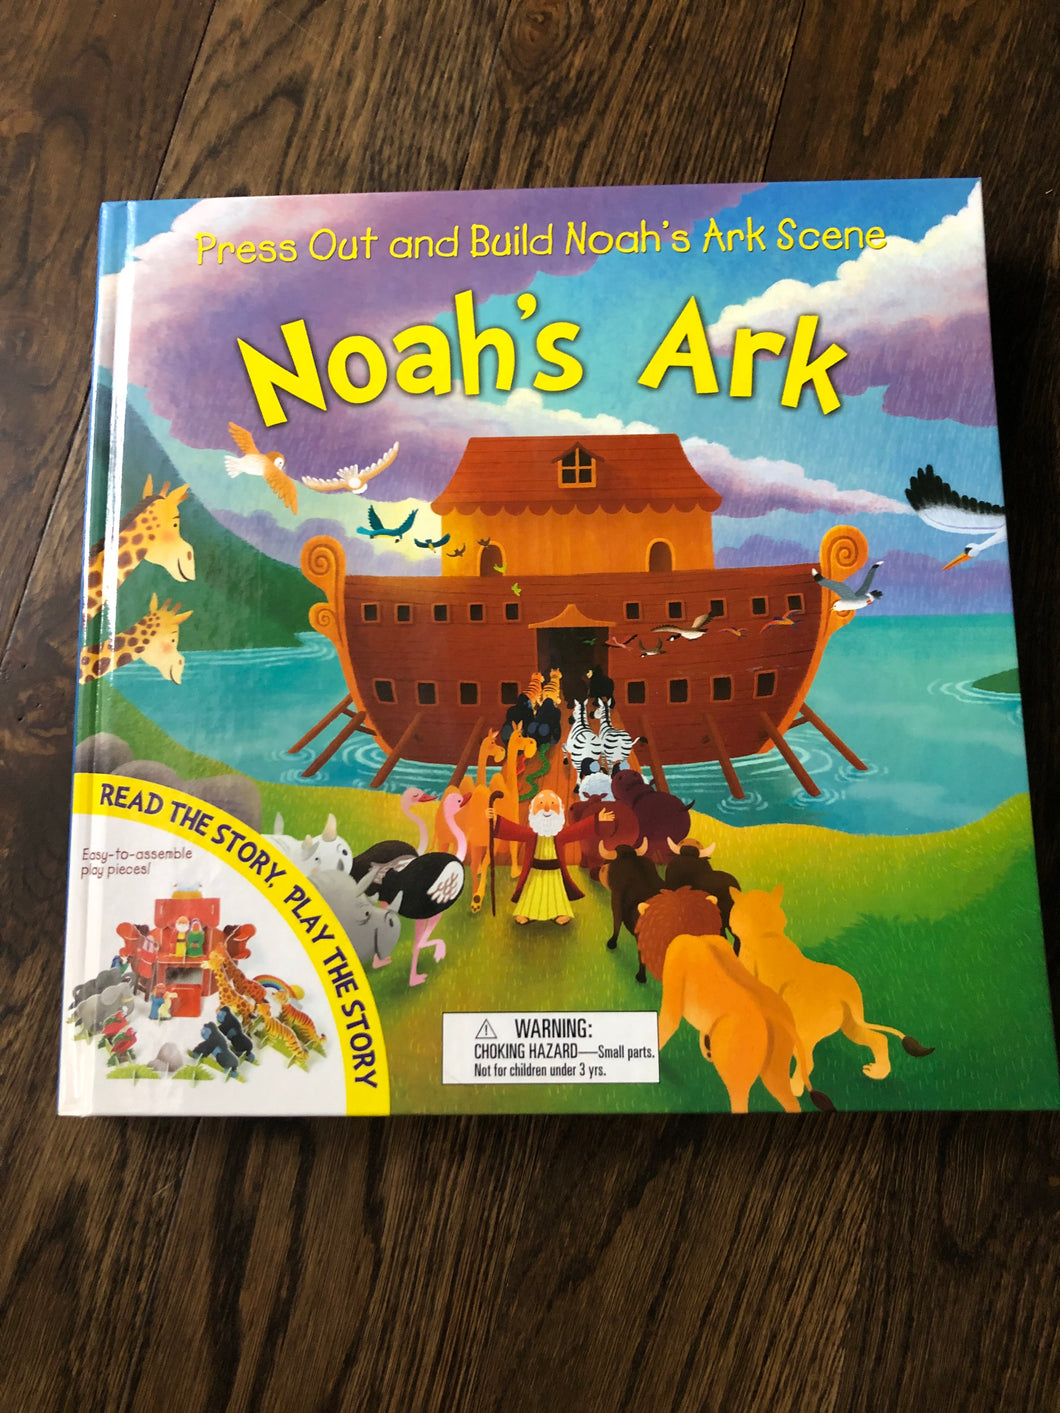 Noah’s Ark